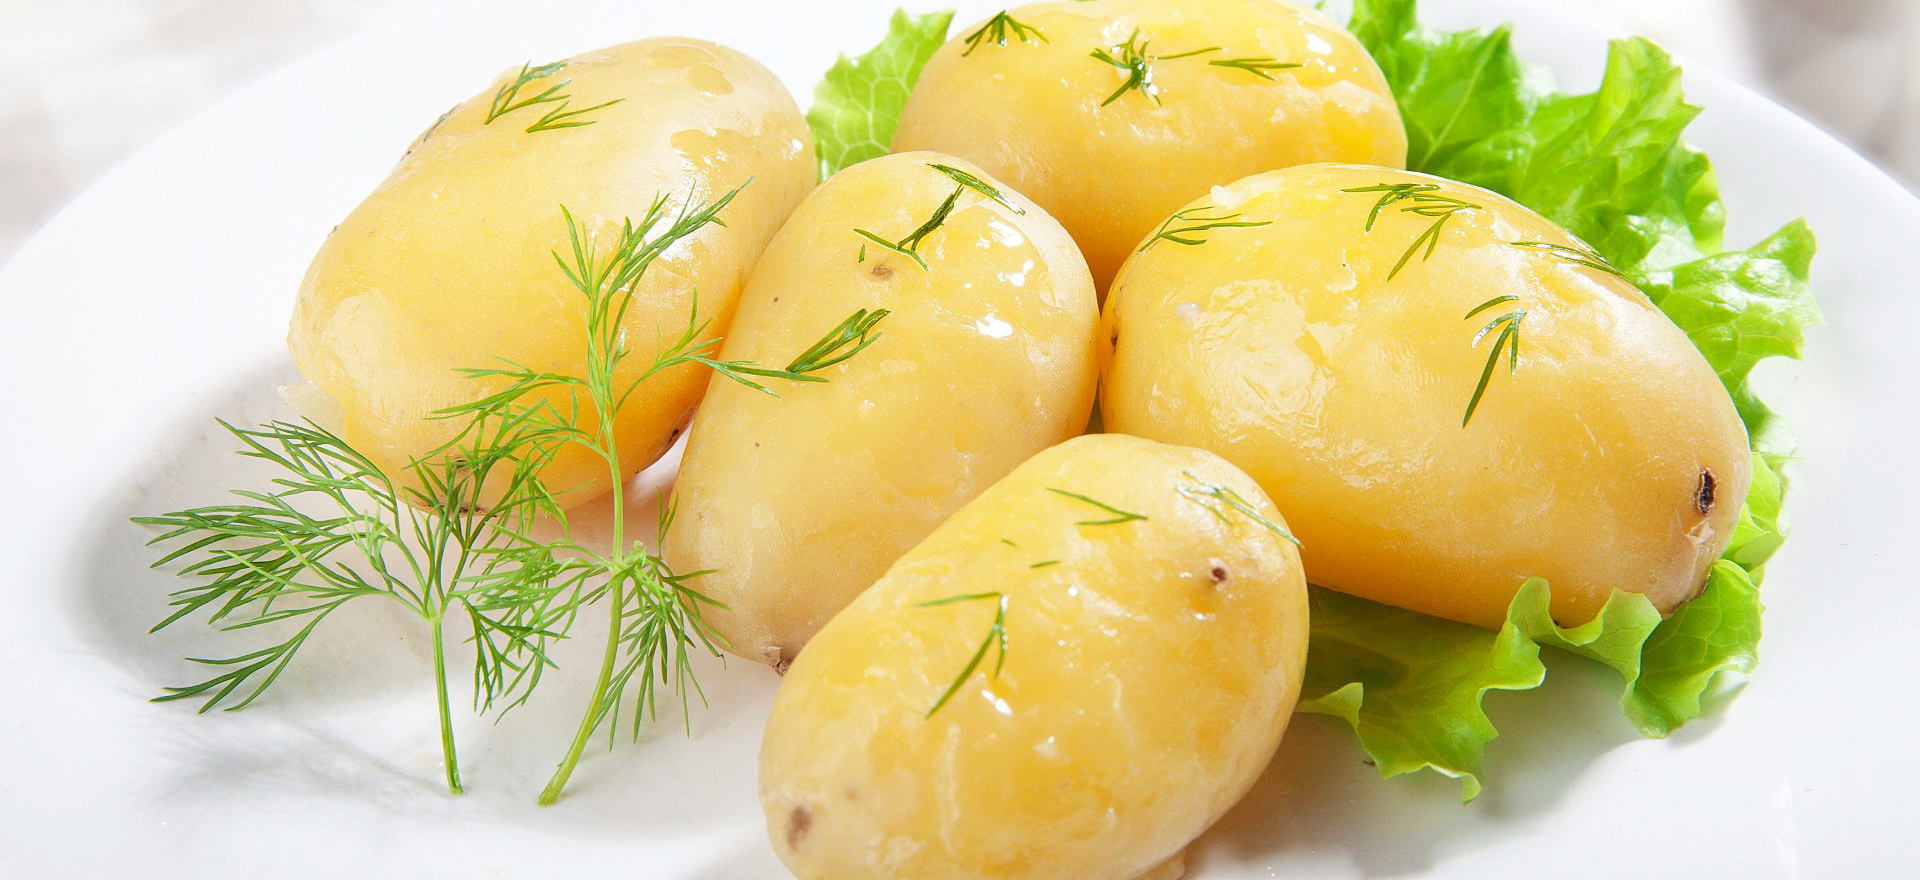 Процесс заготовки картофеля